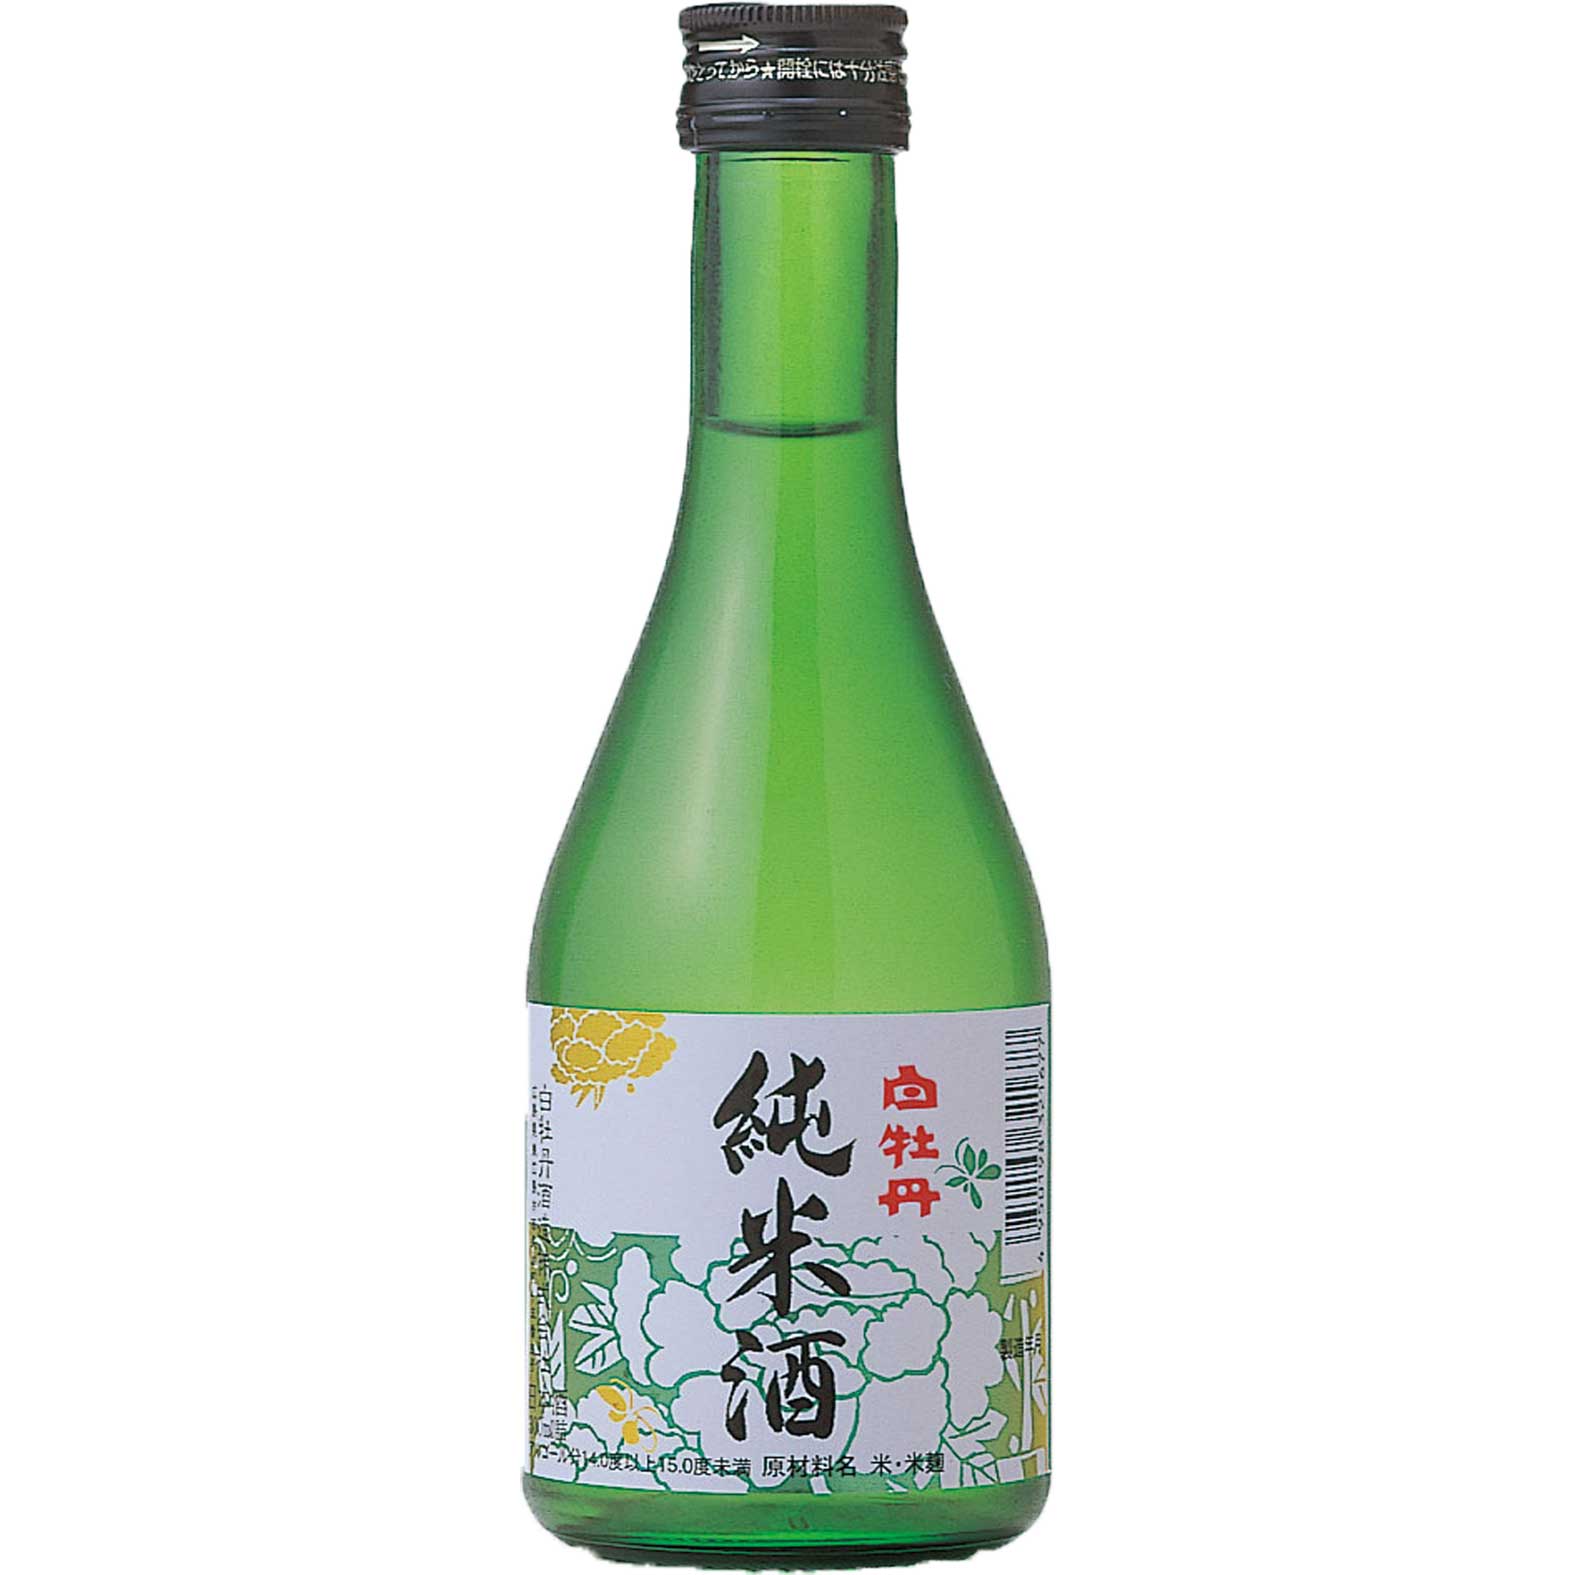 【日本酒 白牡丹】純米酒 300ml瓶詰